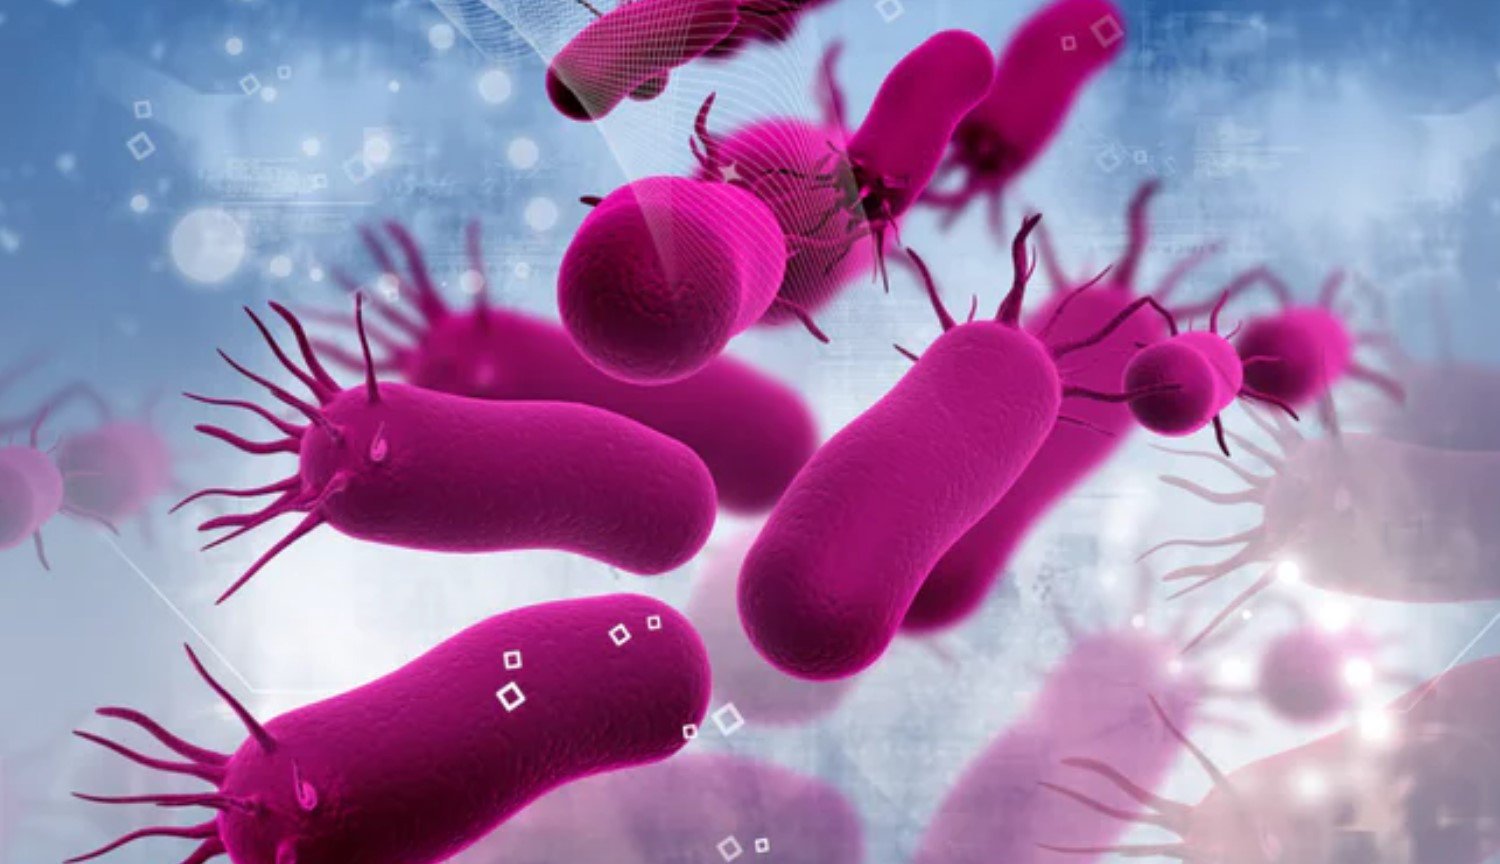 Le mode zombie: les scientifiques ont découvert un nouvel état de bactéries